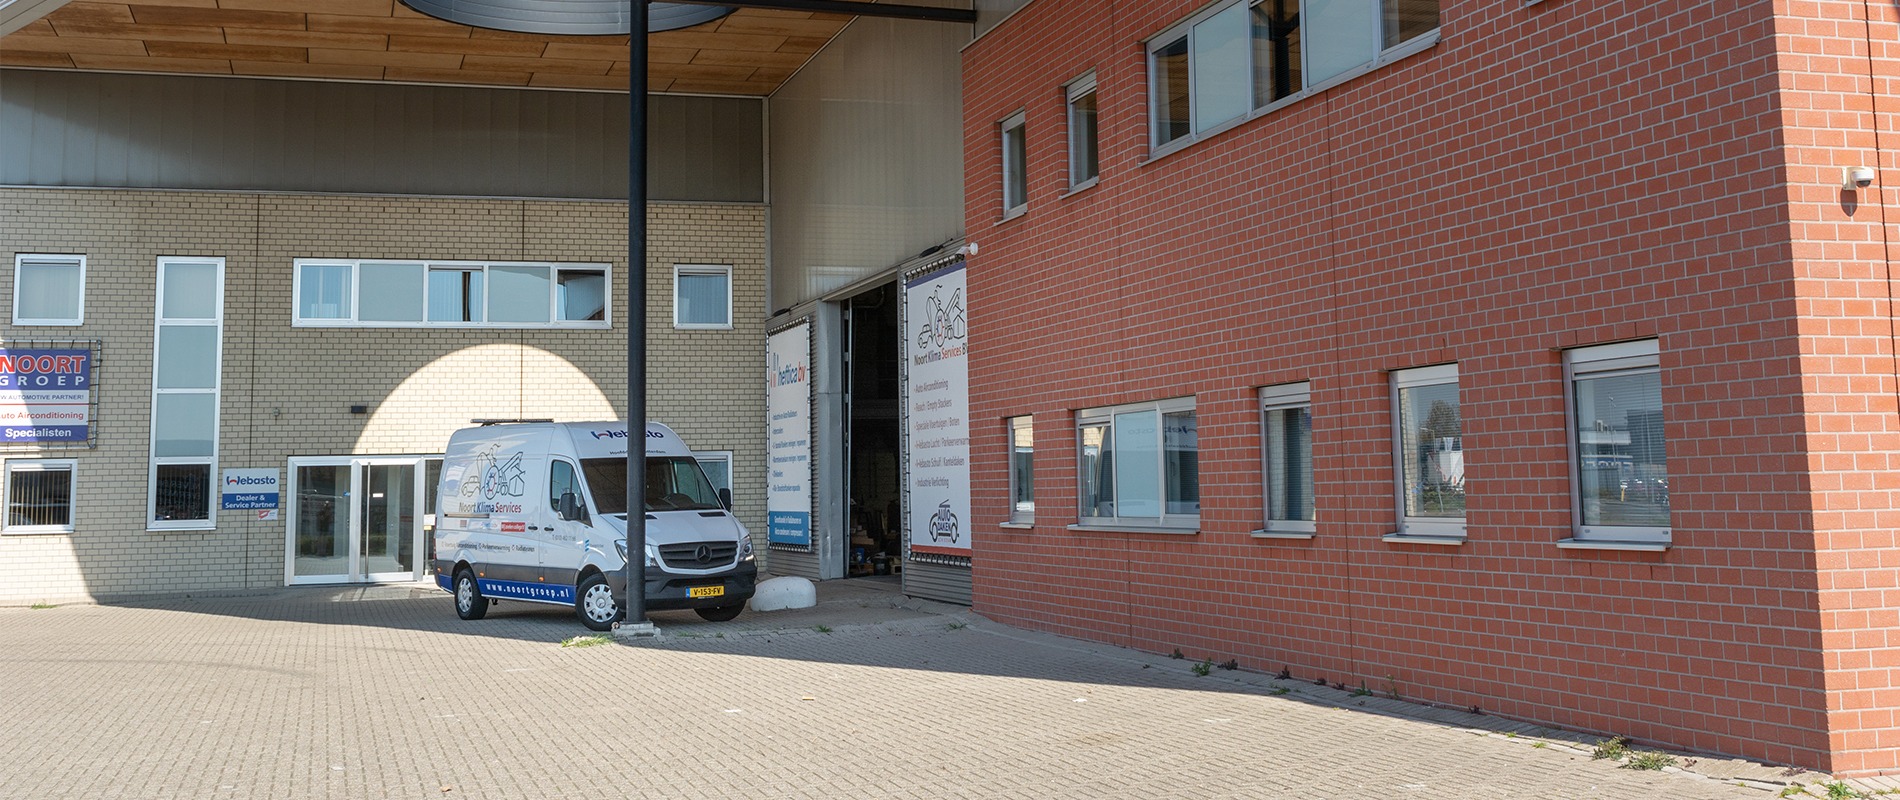 (c) Noortklimaservices.nl